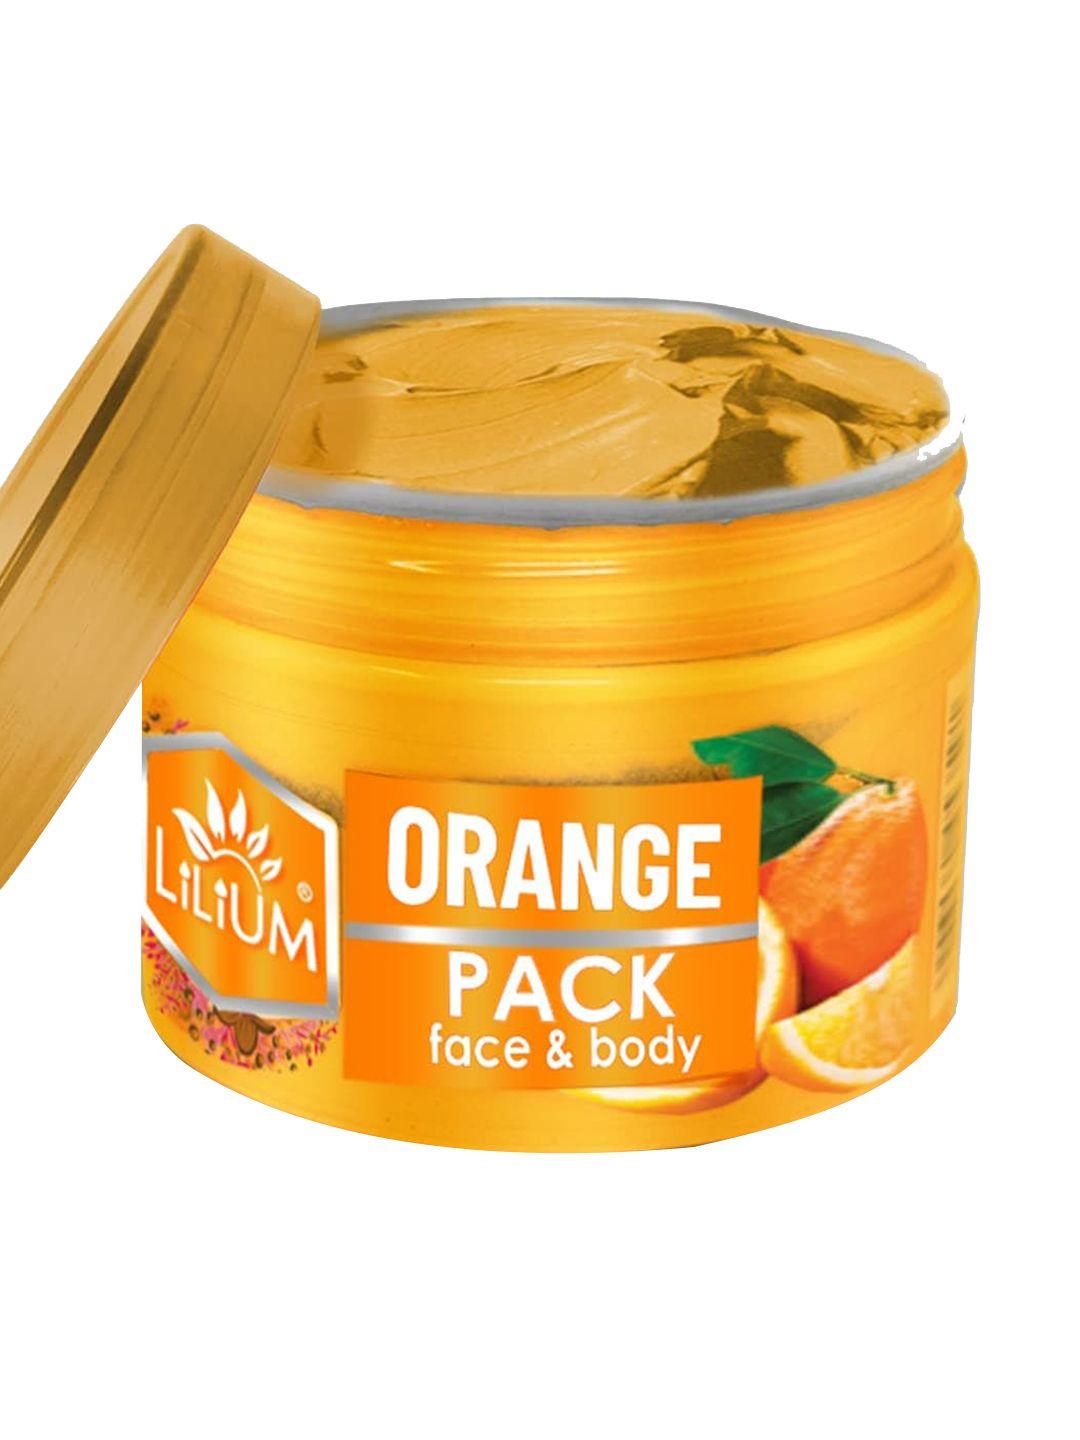 lilium orange face pack 250g